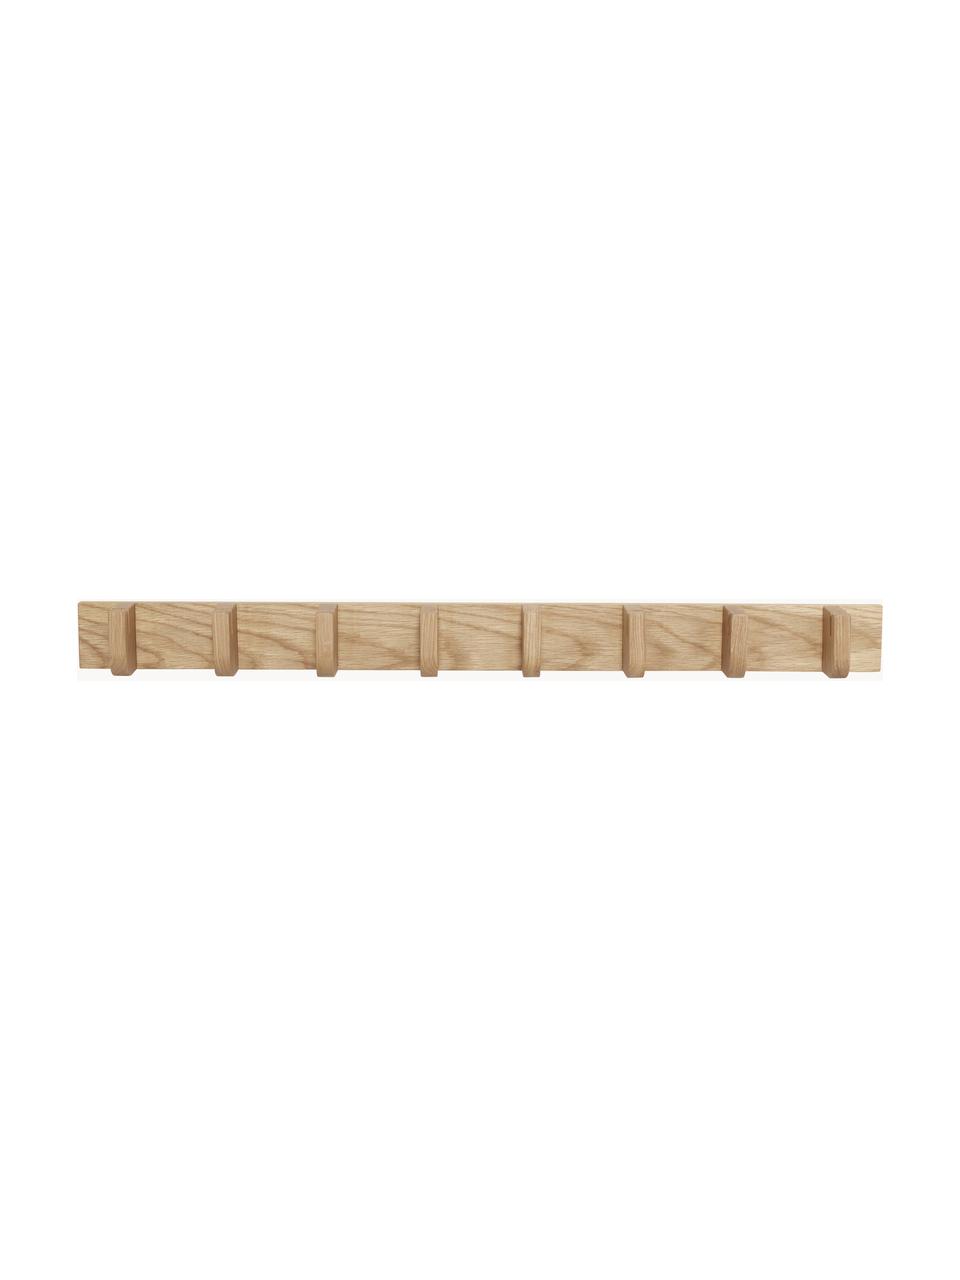 Vešiak z dubového dreva Nomad, Dubové drevo
Tento výrobok je vyrobený z dreva s certifikátom FSC®, ktoré pochádza z udržateľných zdrojov, Dubové drevo, Š 96 cm